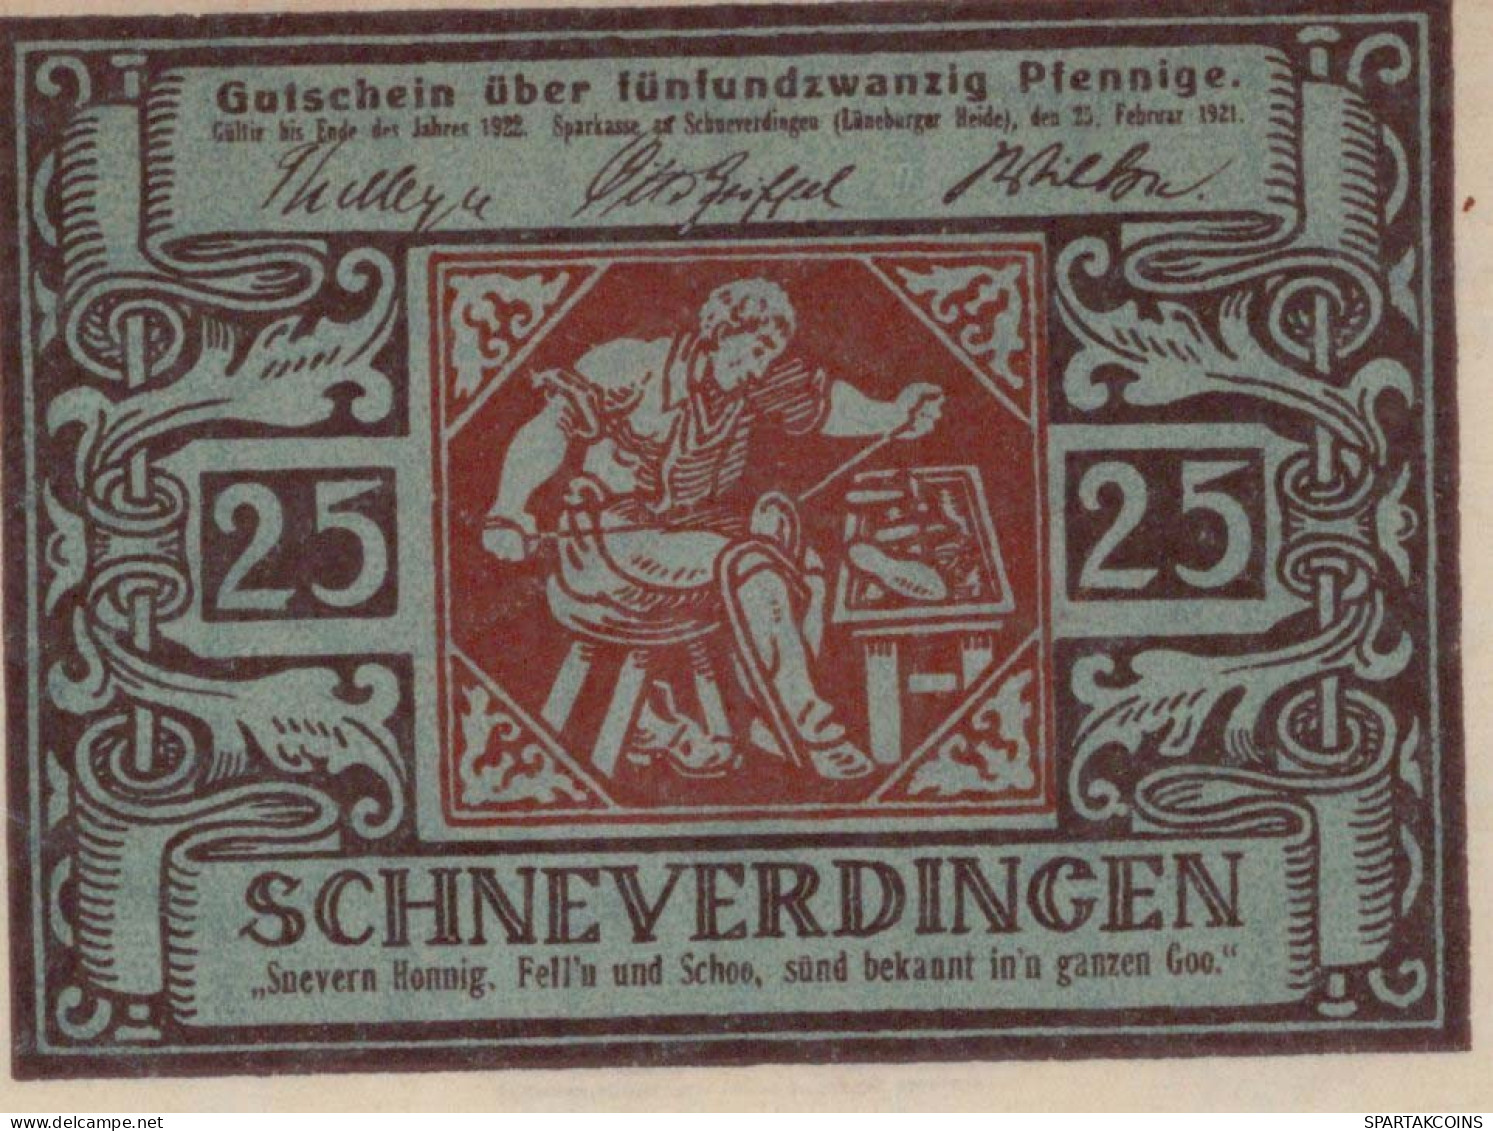 25 PFENNIG 1921 Stadt SCHNEVERDINGEN Hanover UNC DEUTSCHLAND Notgeld #PH960 - [11] Local Banknote Issues